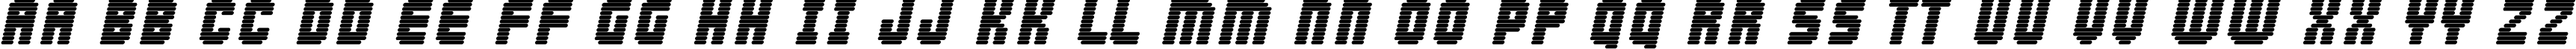 Пример написания английского алфавита шрифтом FK Abduction.kz